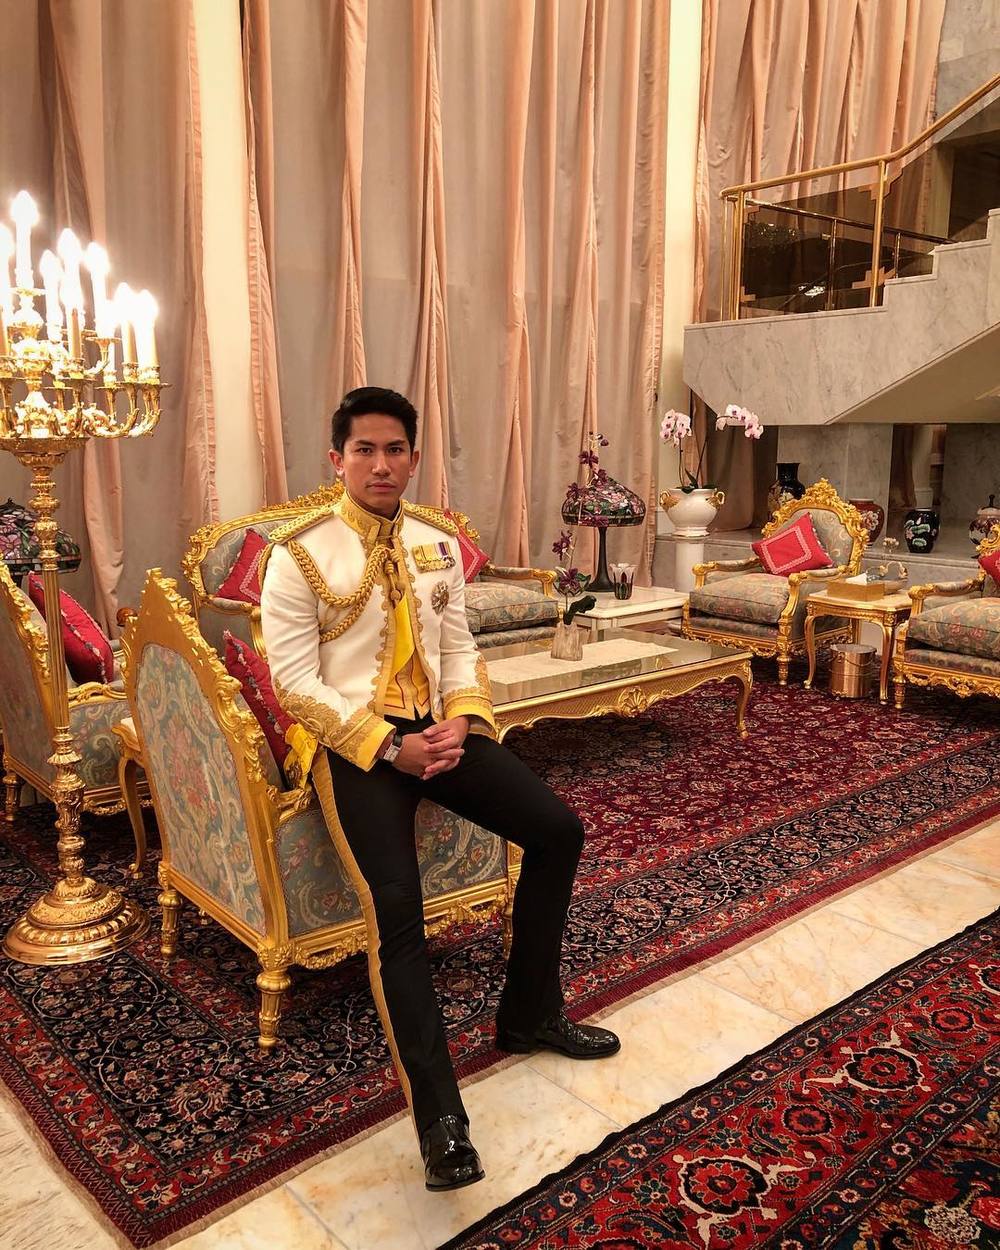  
Hoàng tử 9x khiến nhiều người ngưỡng mộ bởi cuộc sống vô cùng giàu có của mình. (Ảnh: Instagram NV).